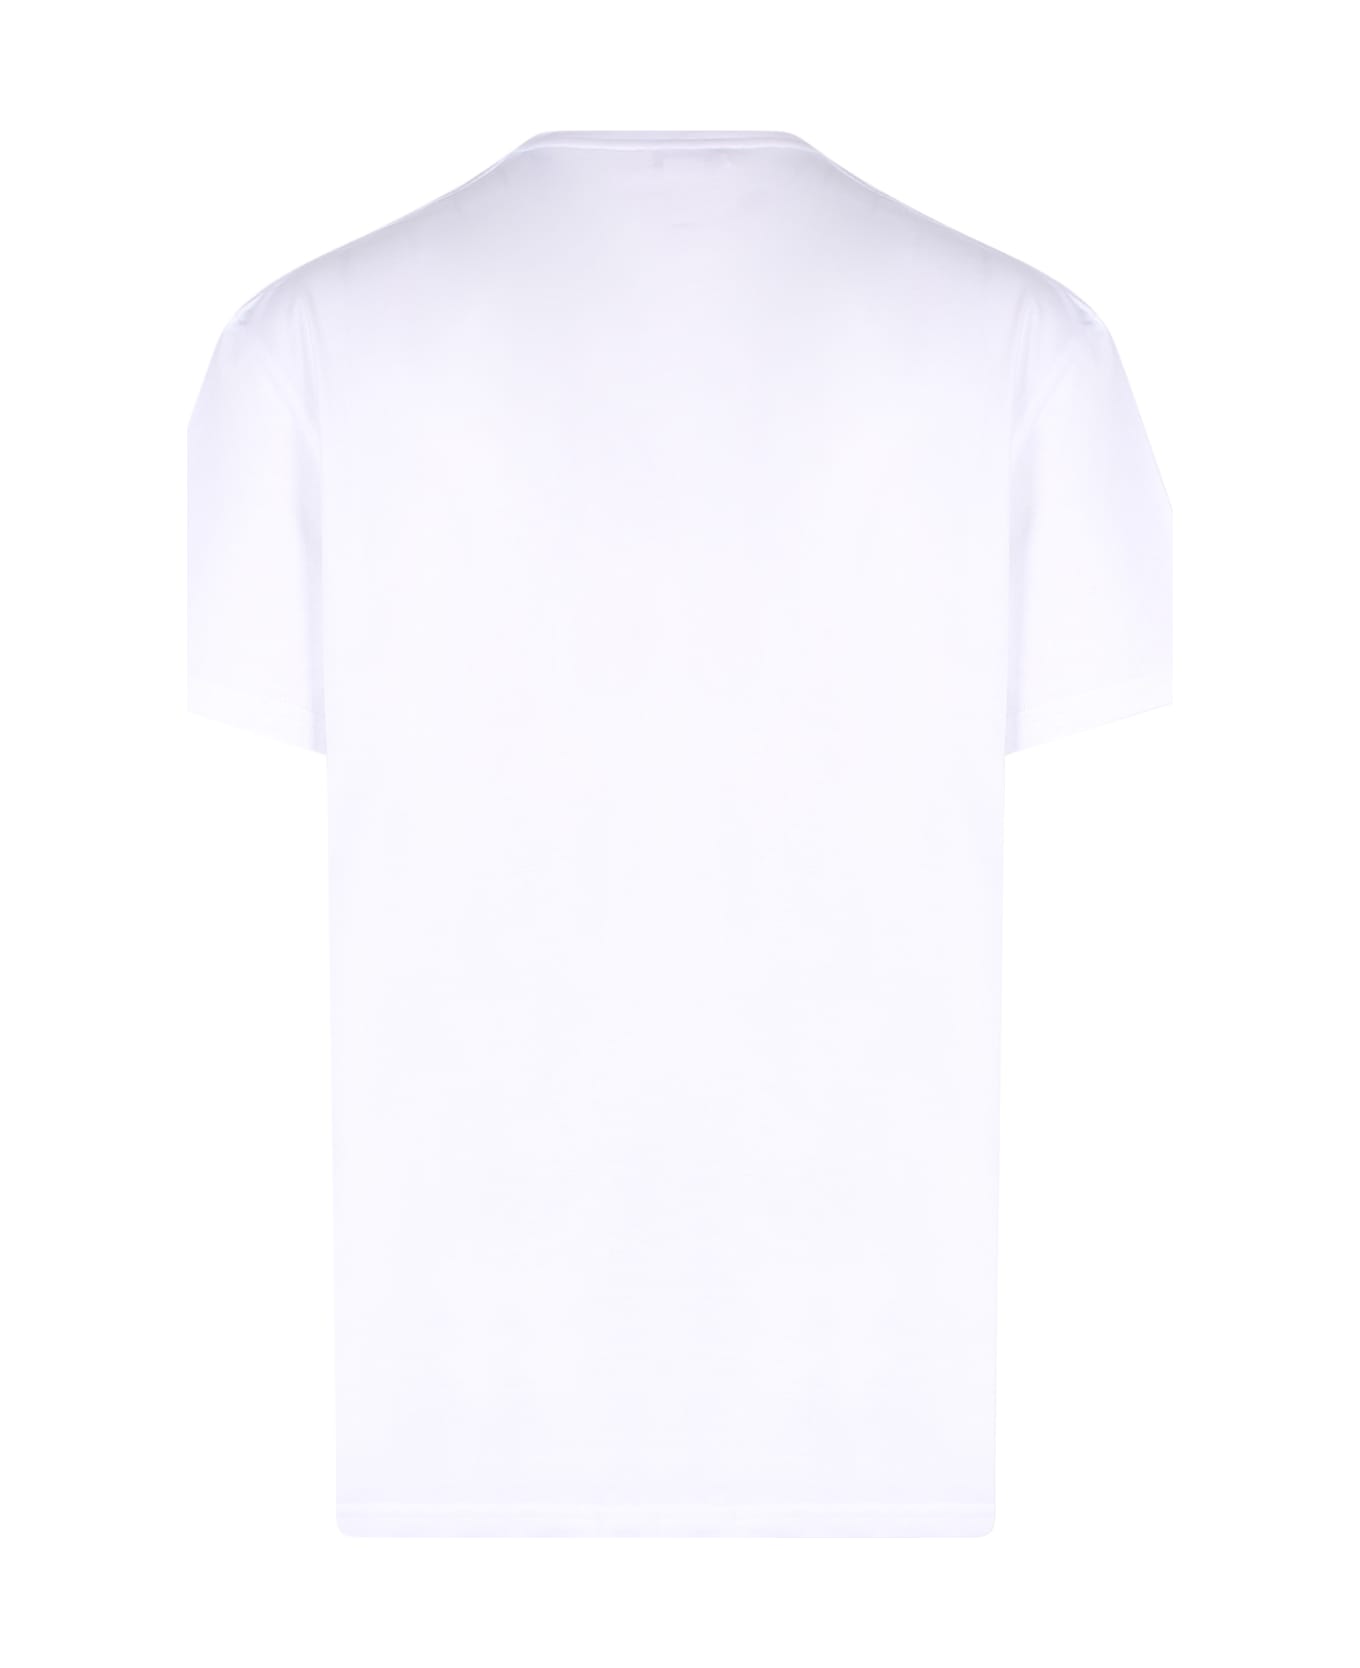 Alexander McQueen T-shirt - WHITE/MIX